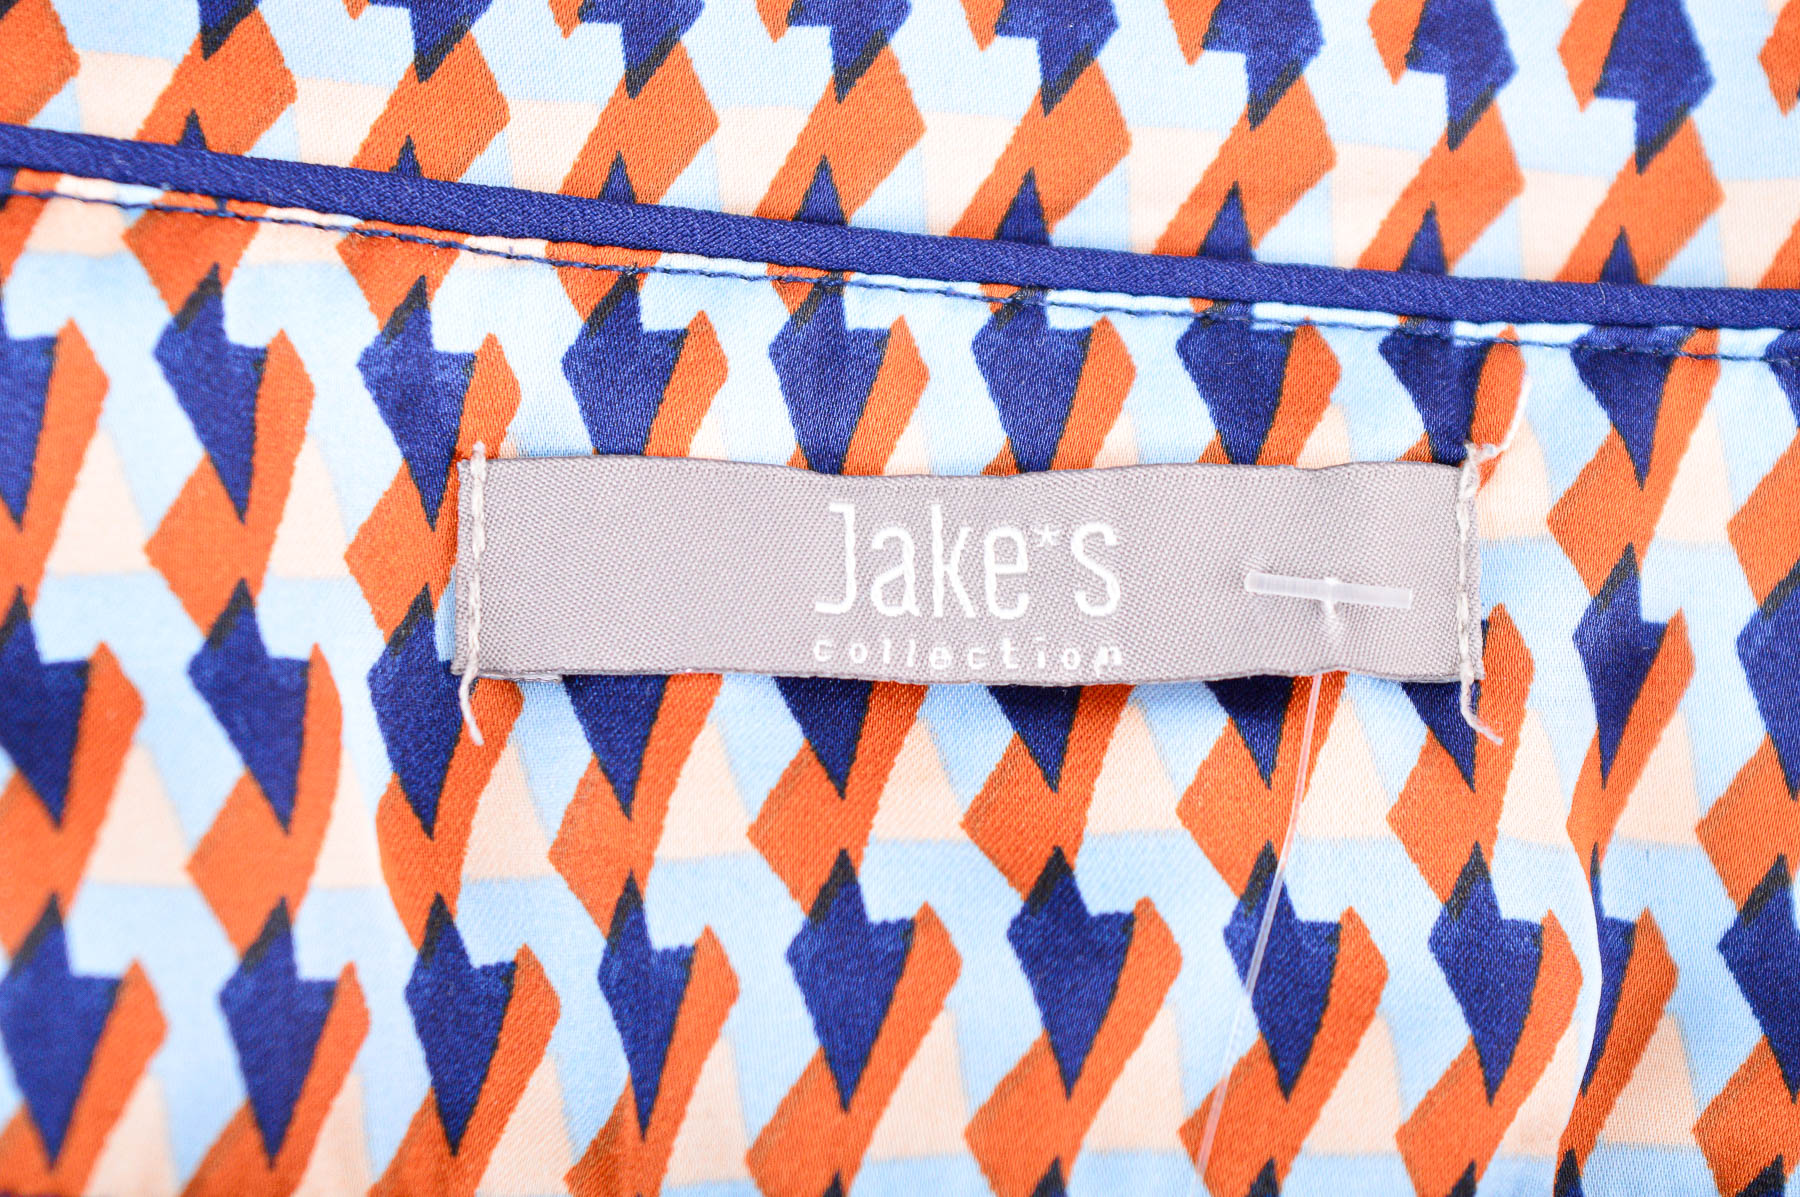 Γυναικείο πουκάμισο - Jake*s - 2